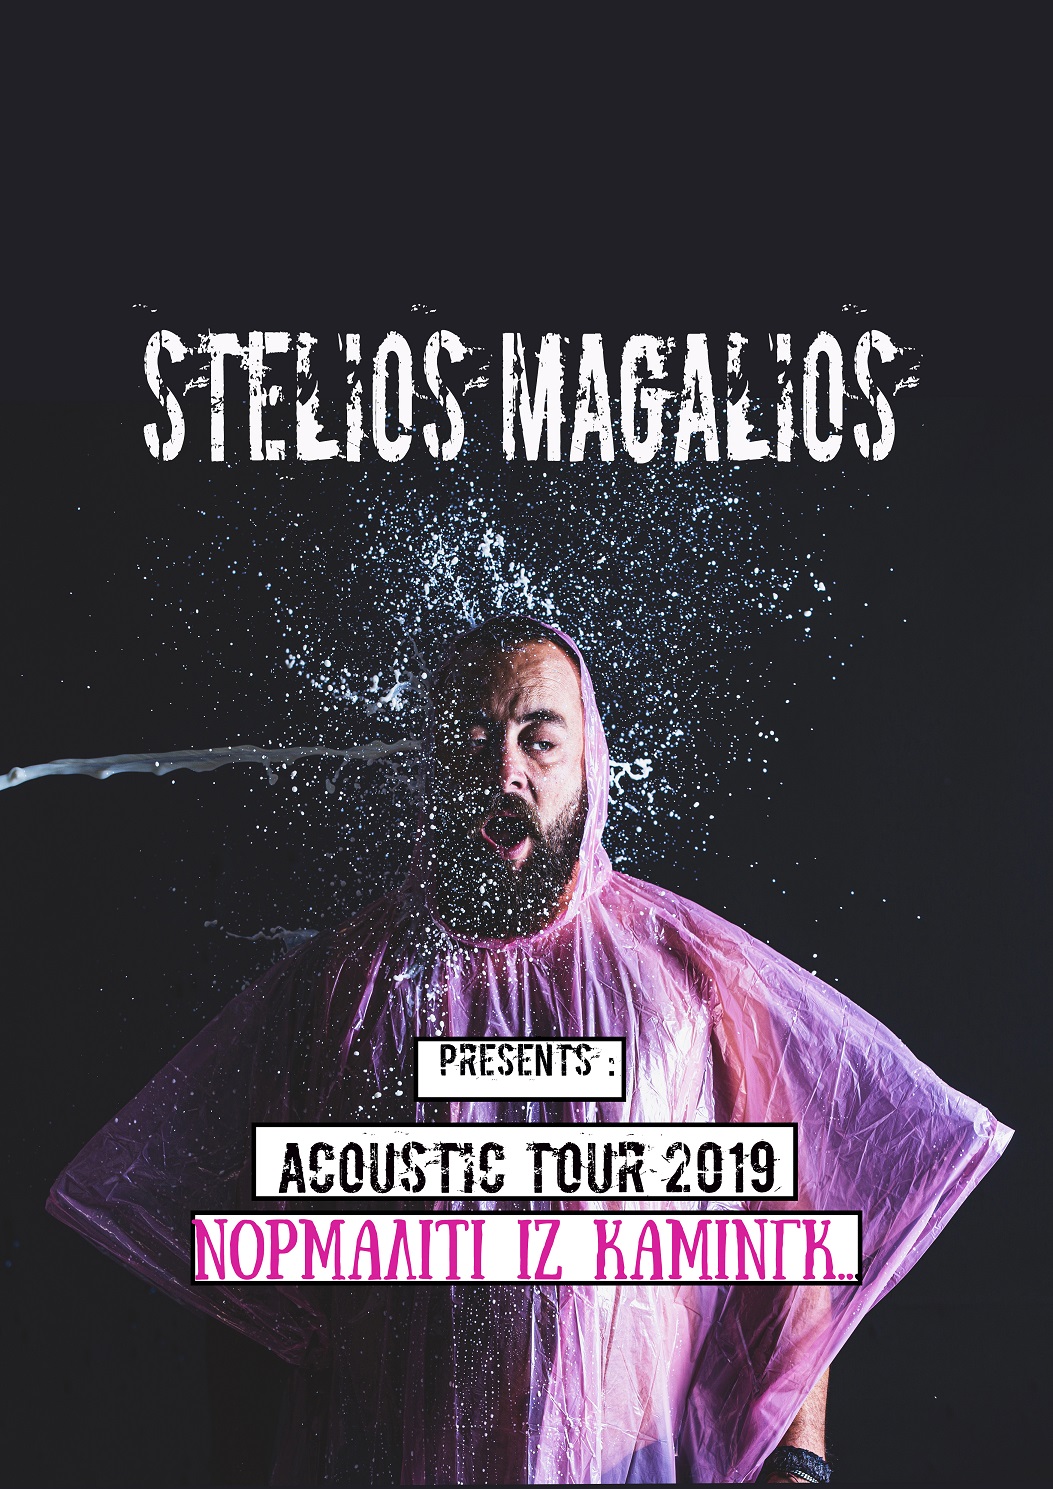 magalios tour 2019